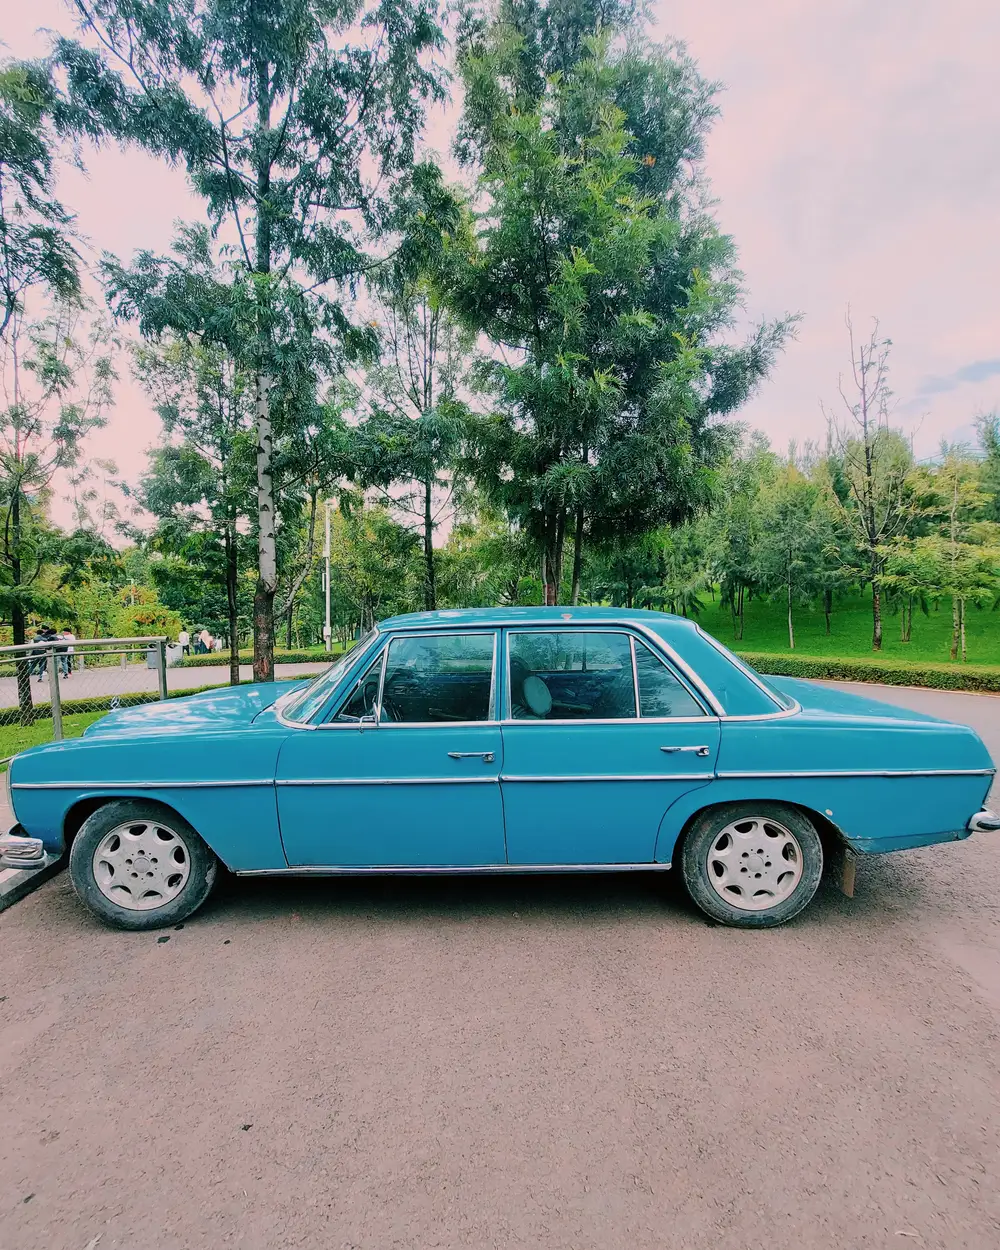 A blue car